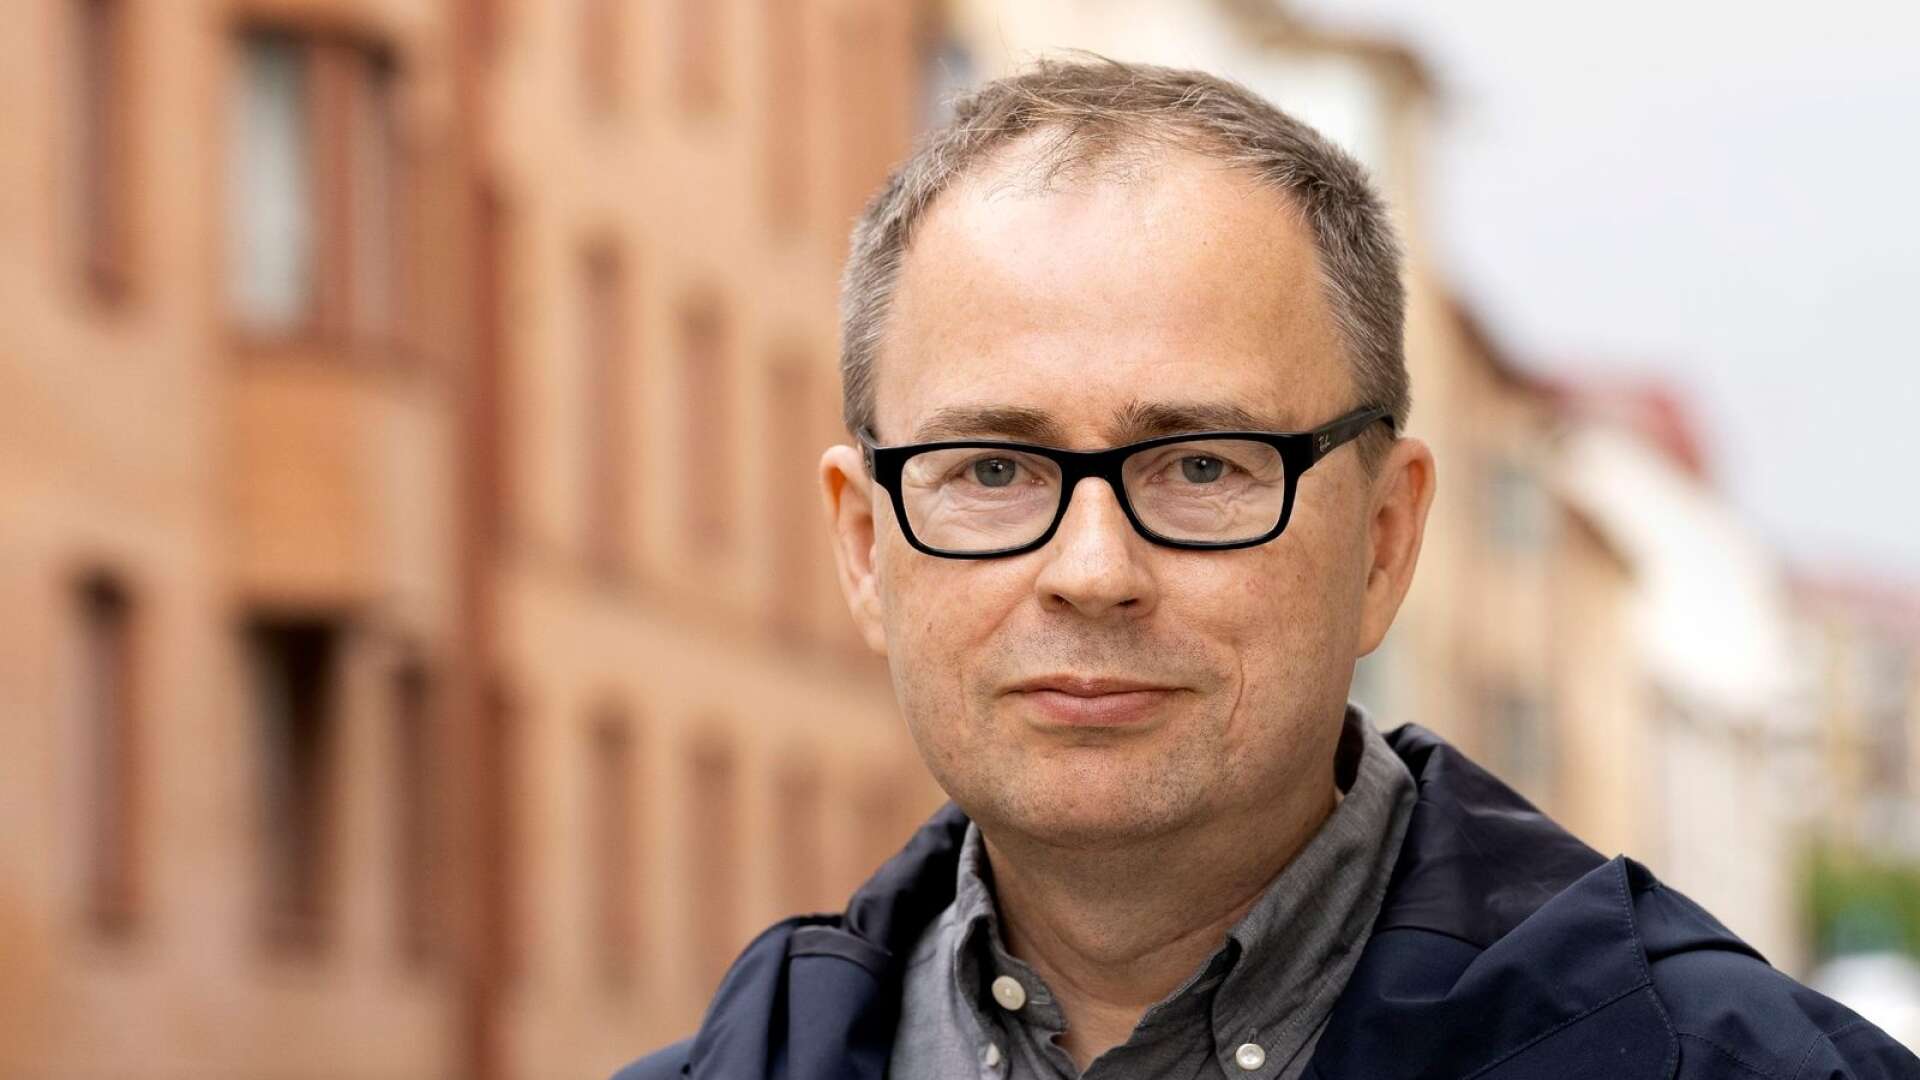 David Karlsson är professor i offentlig förvaltning vid Göteborgs universitet och har bland annat studerat kommunal politik och demokrati. 